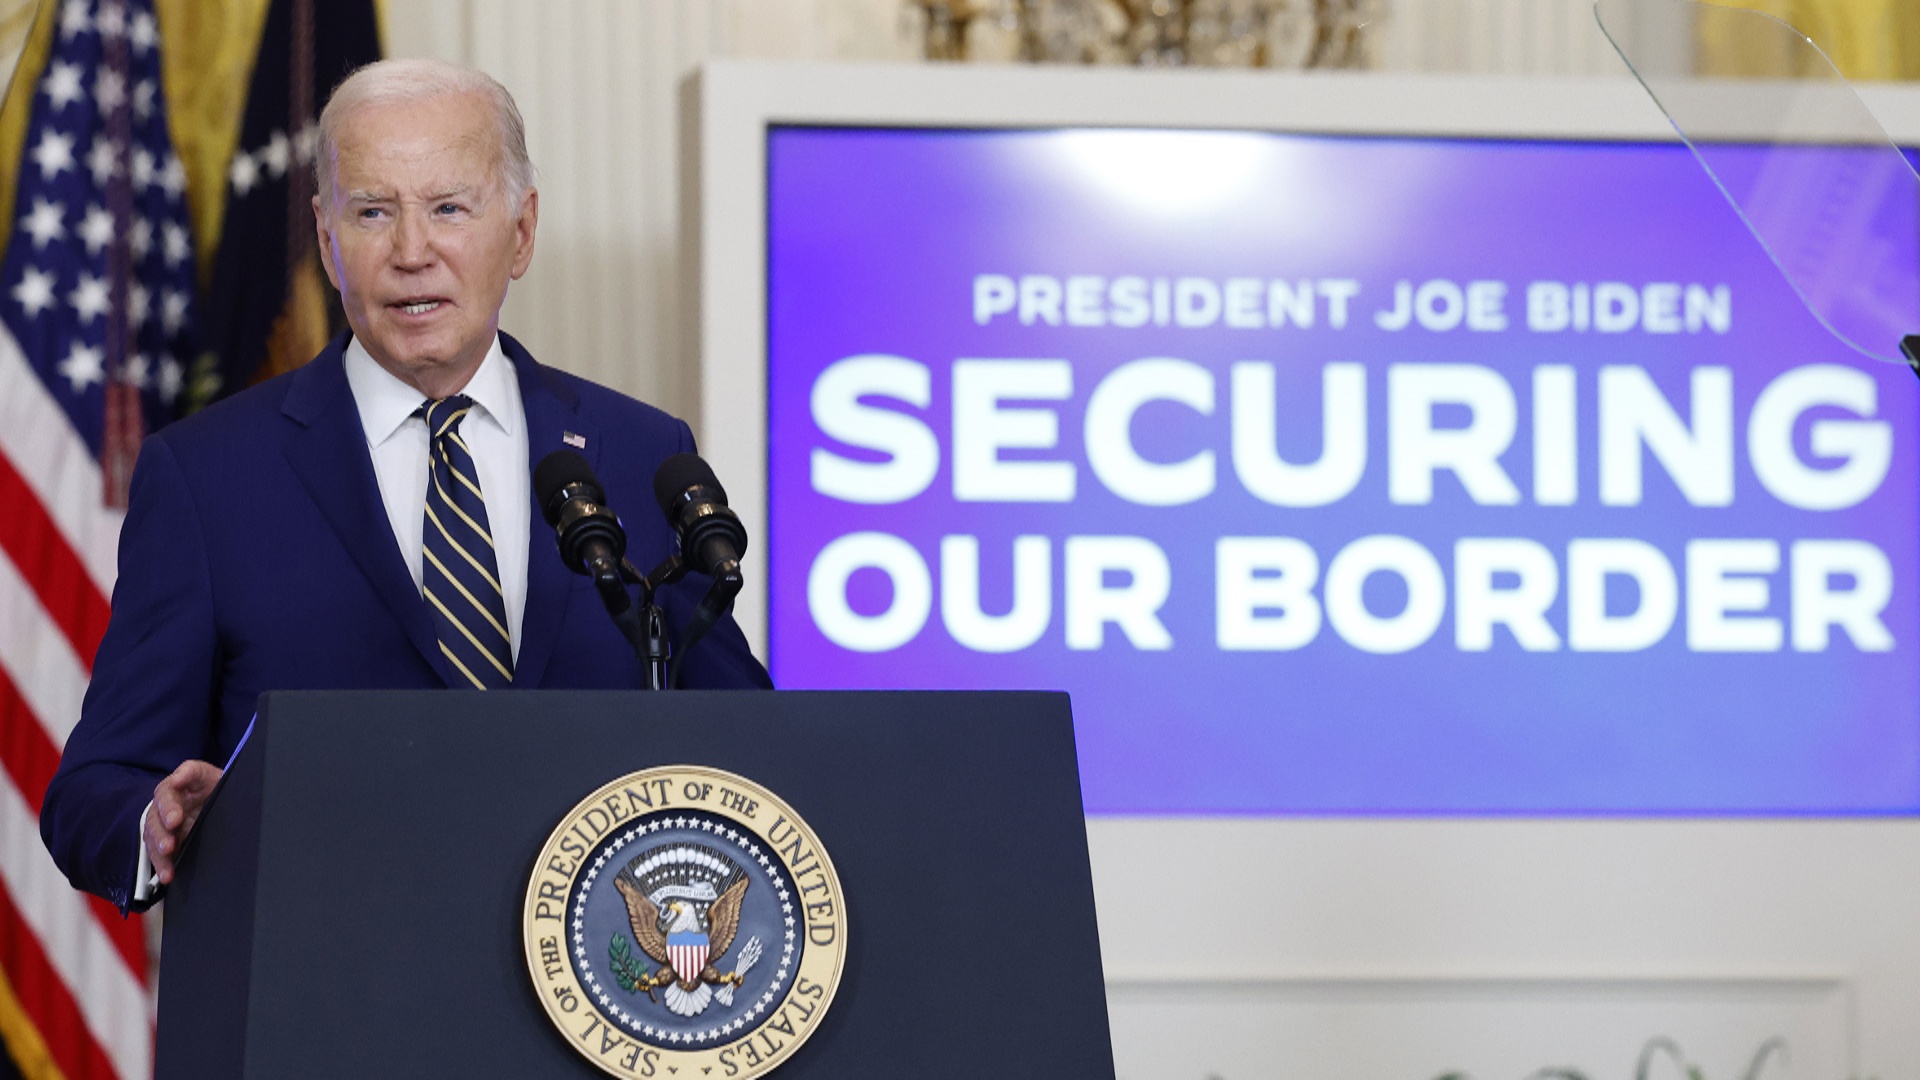 Джо Байден ввёл запрет на предоставление убежища нелегальным мигрантам